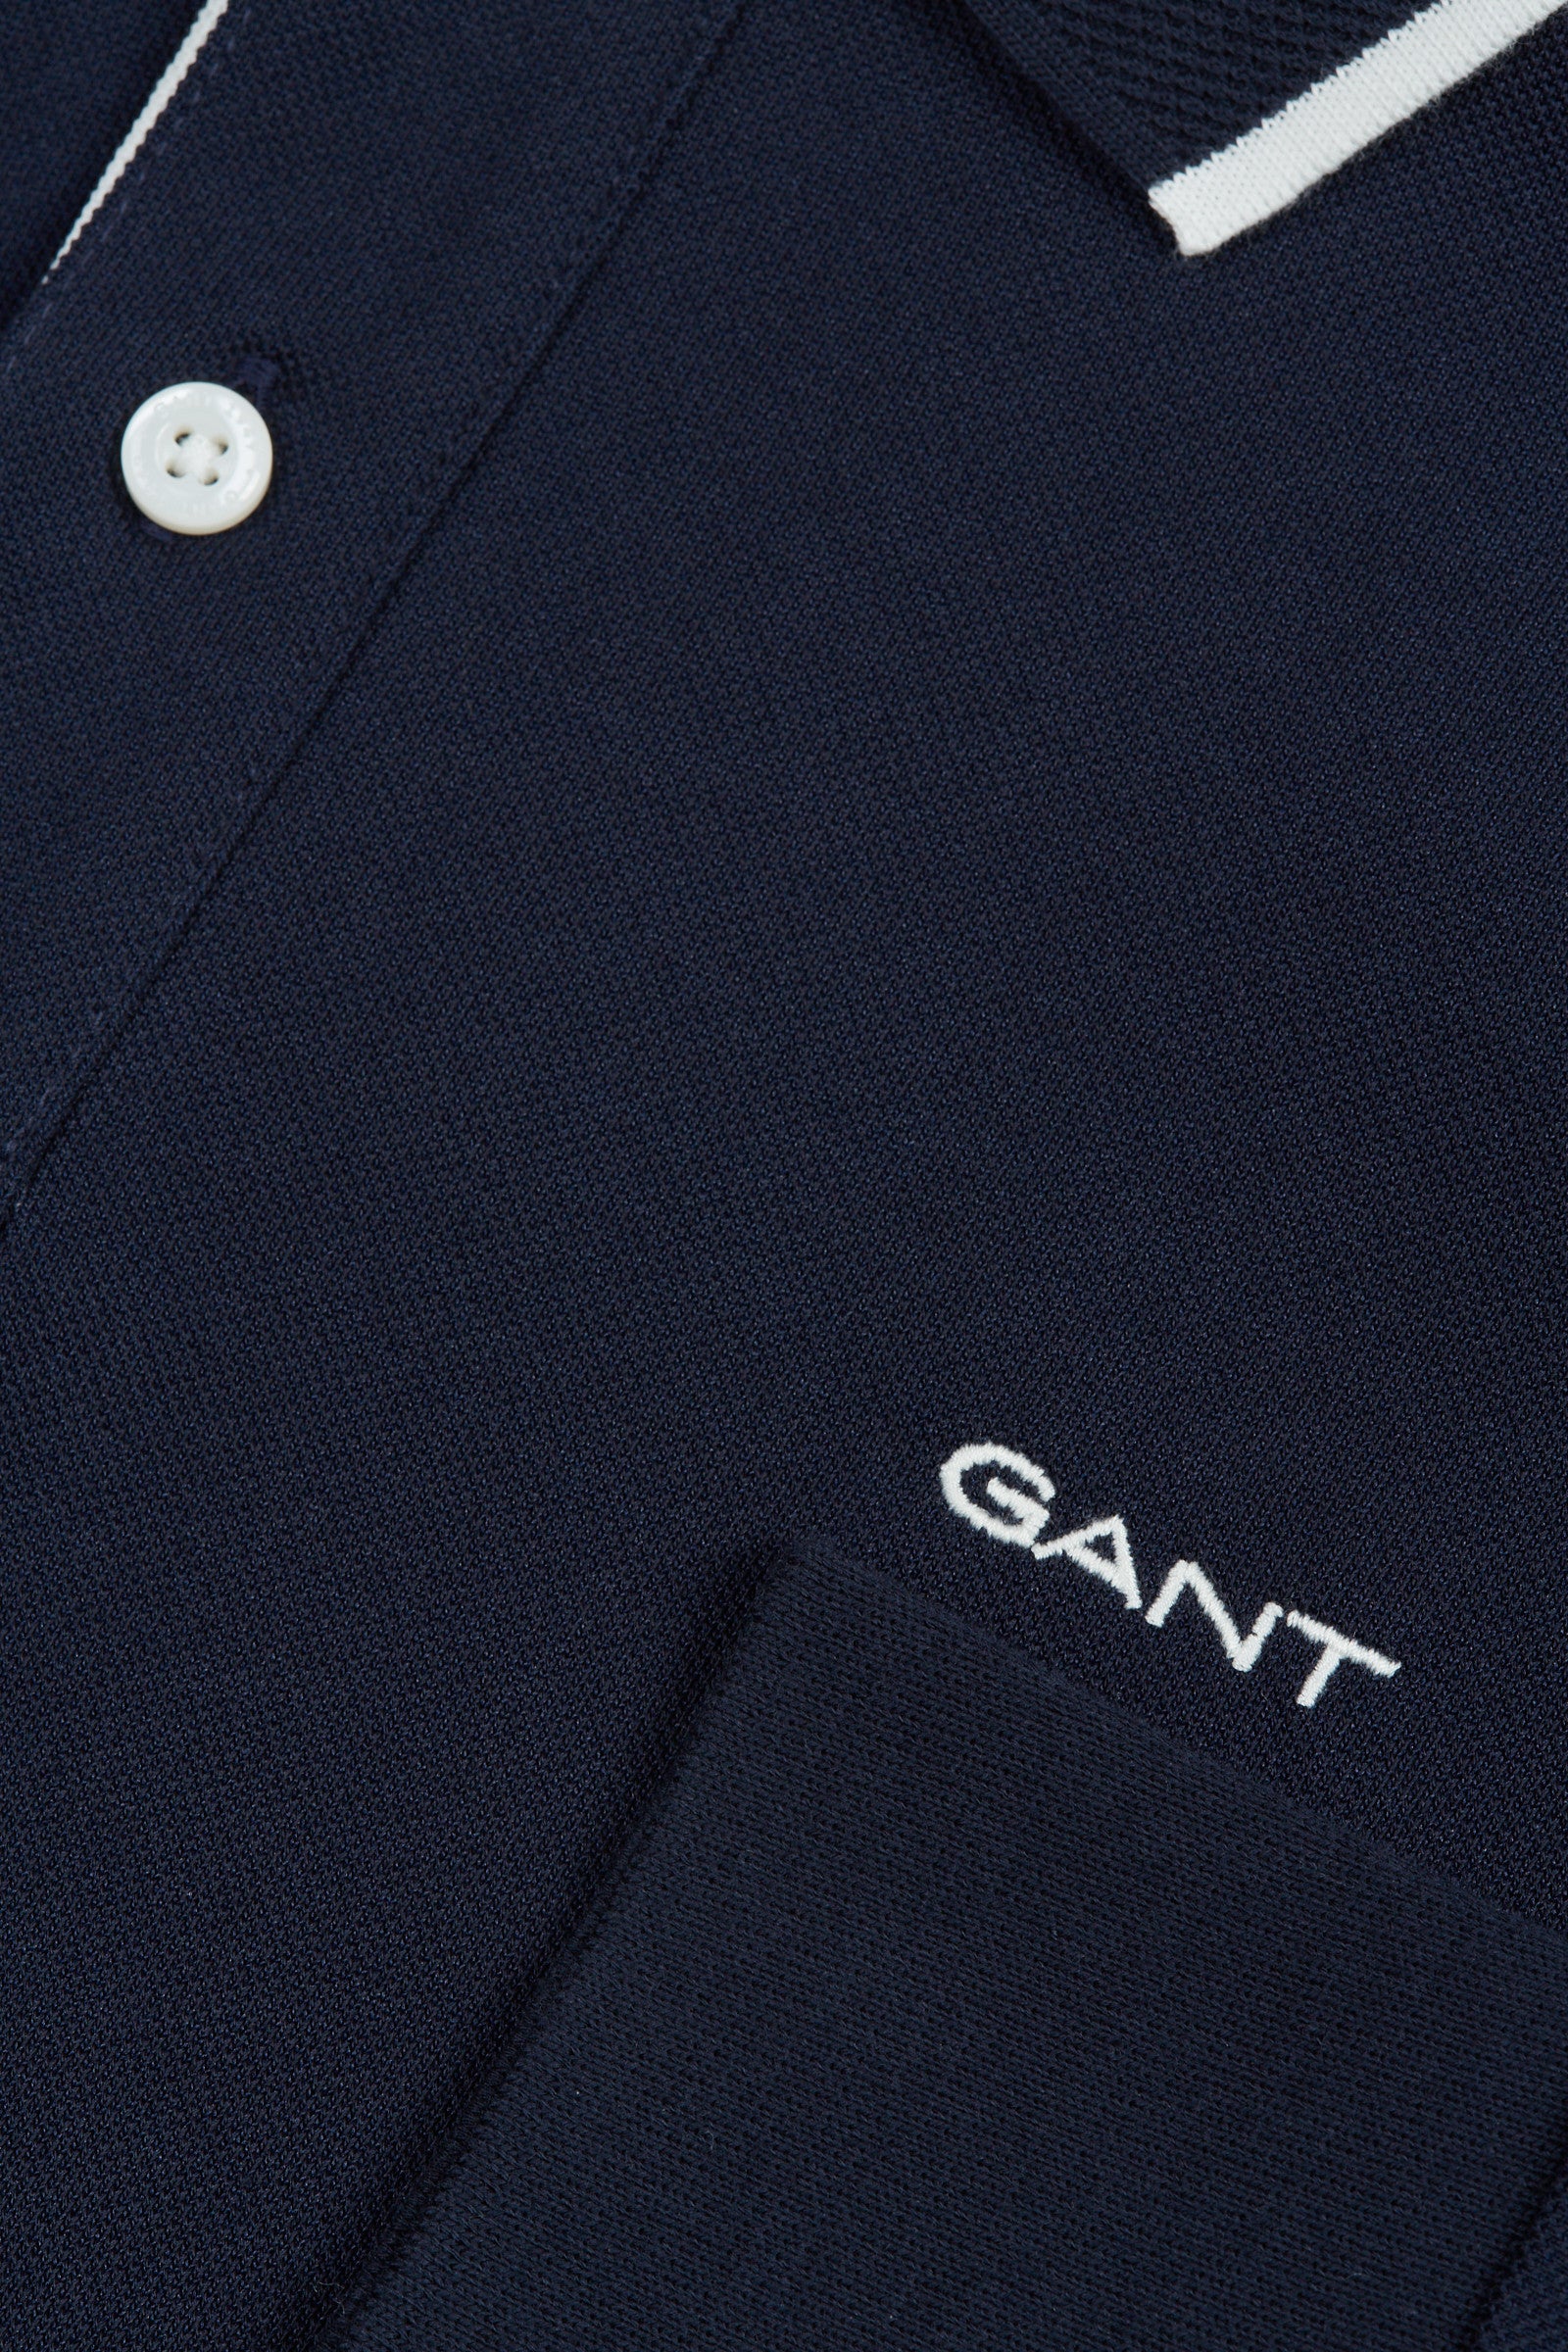 GANT - Long Sleeve Pique Polo Shirt In Dark Marine Blue 2062029 433